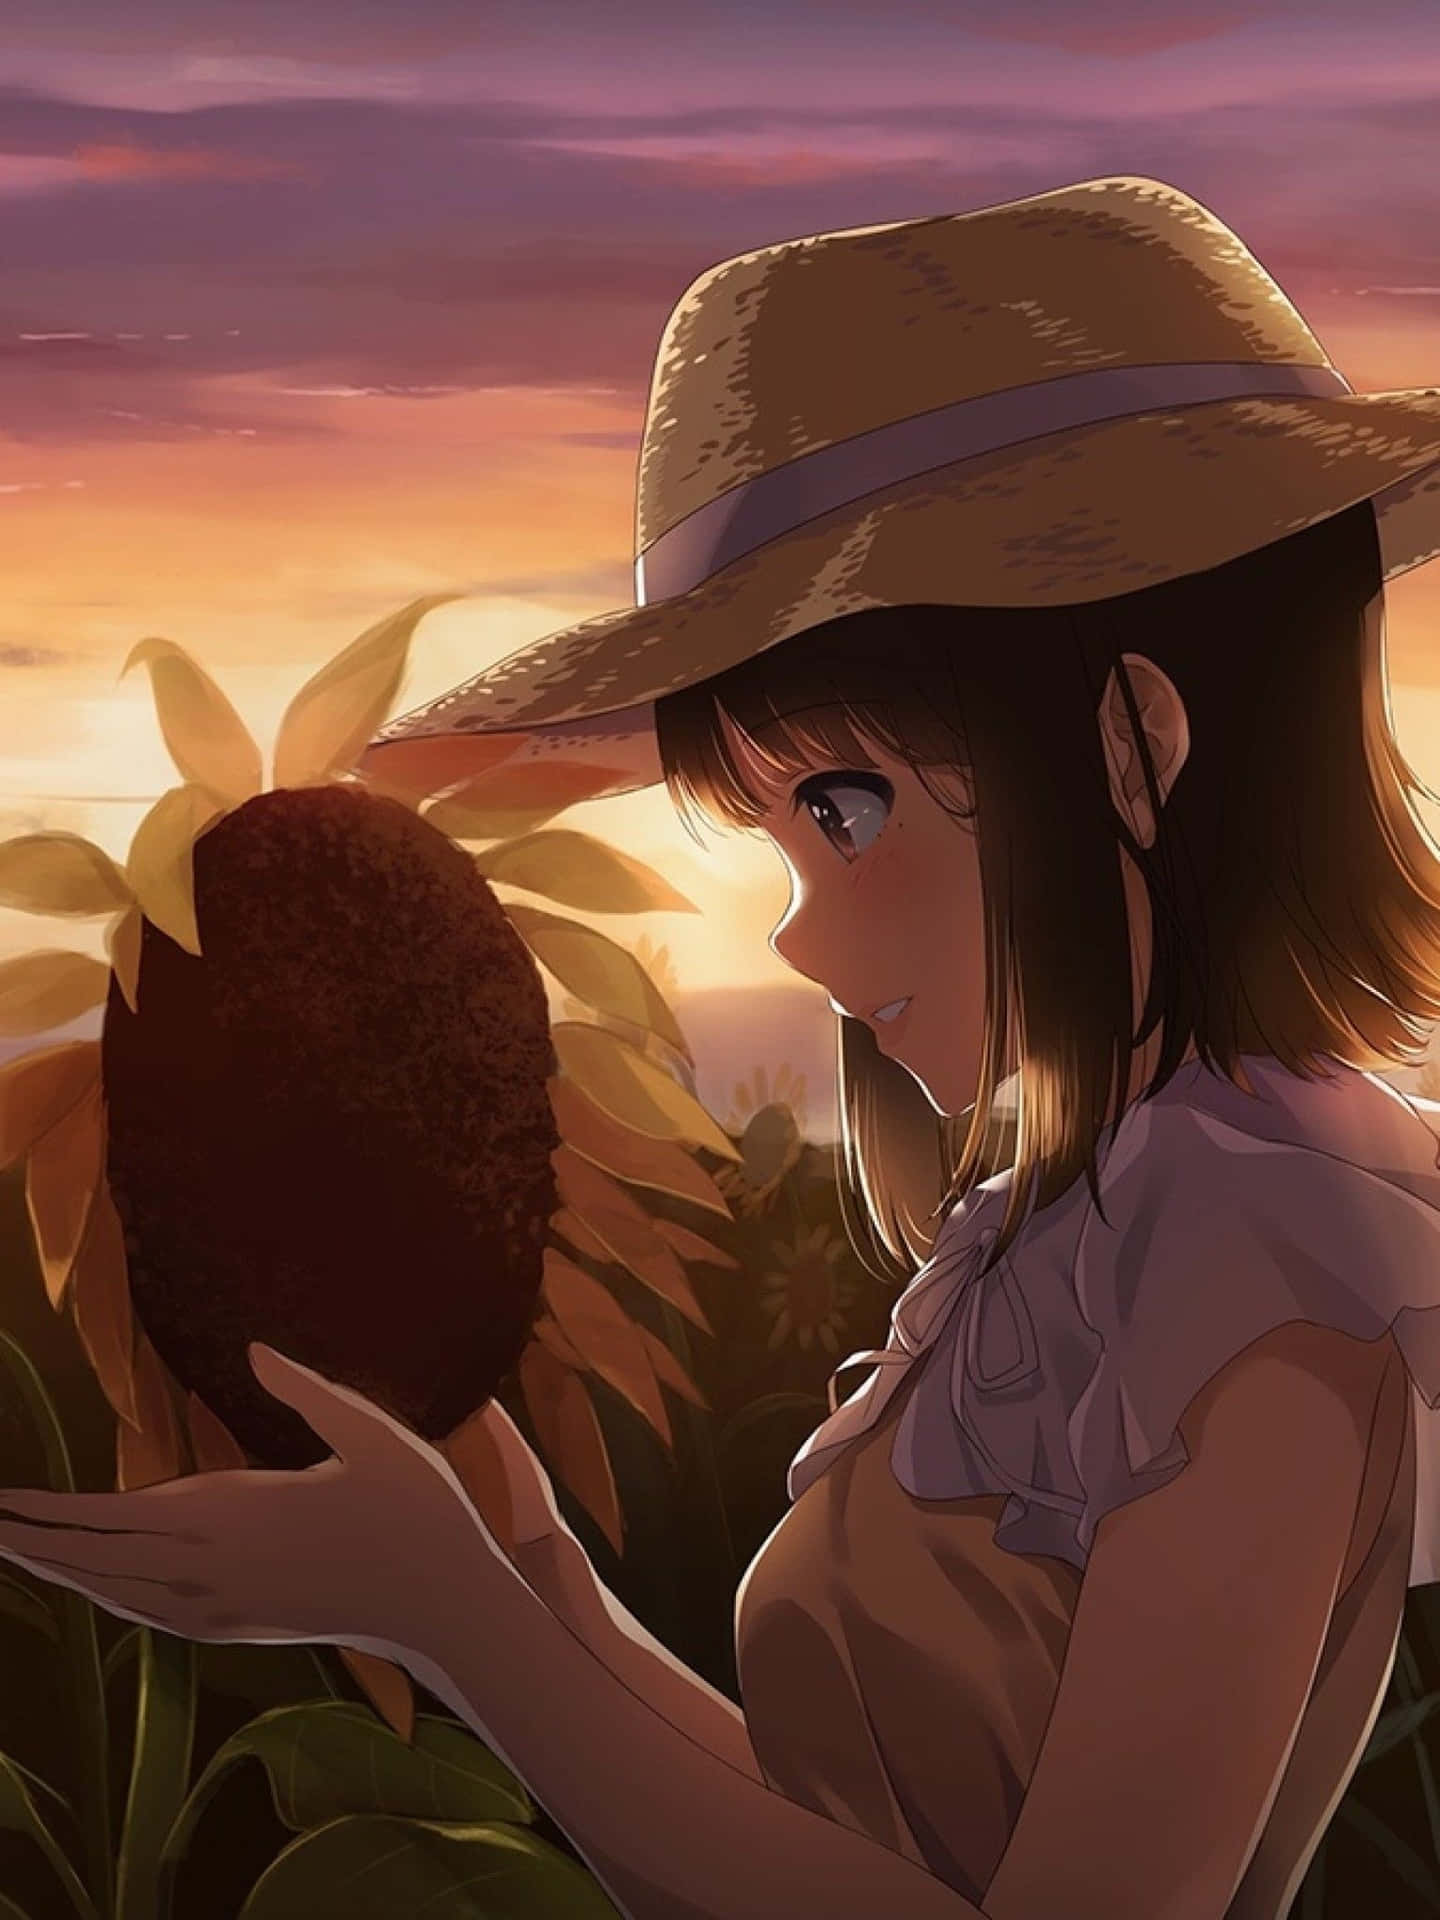 Anime Girl Sunflower Garden Digital Art Stock Illustration 2342158341 |  Shutterstock